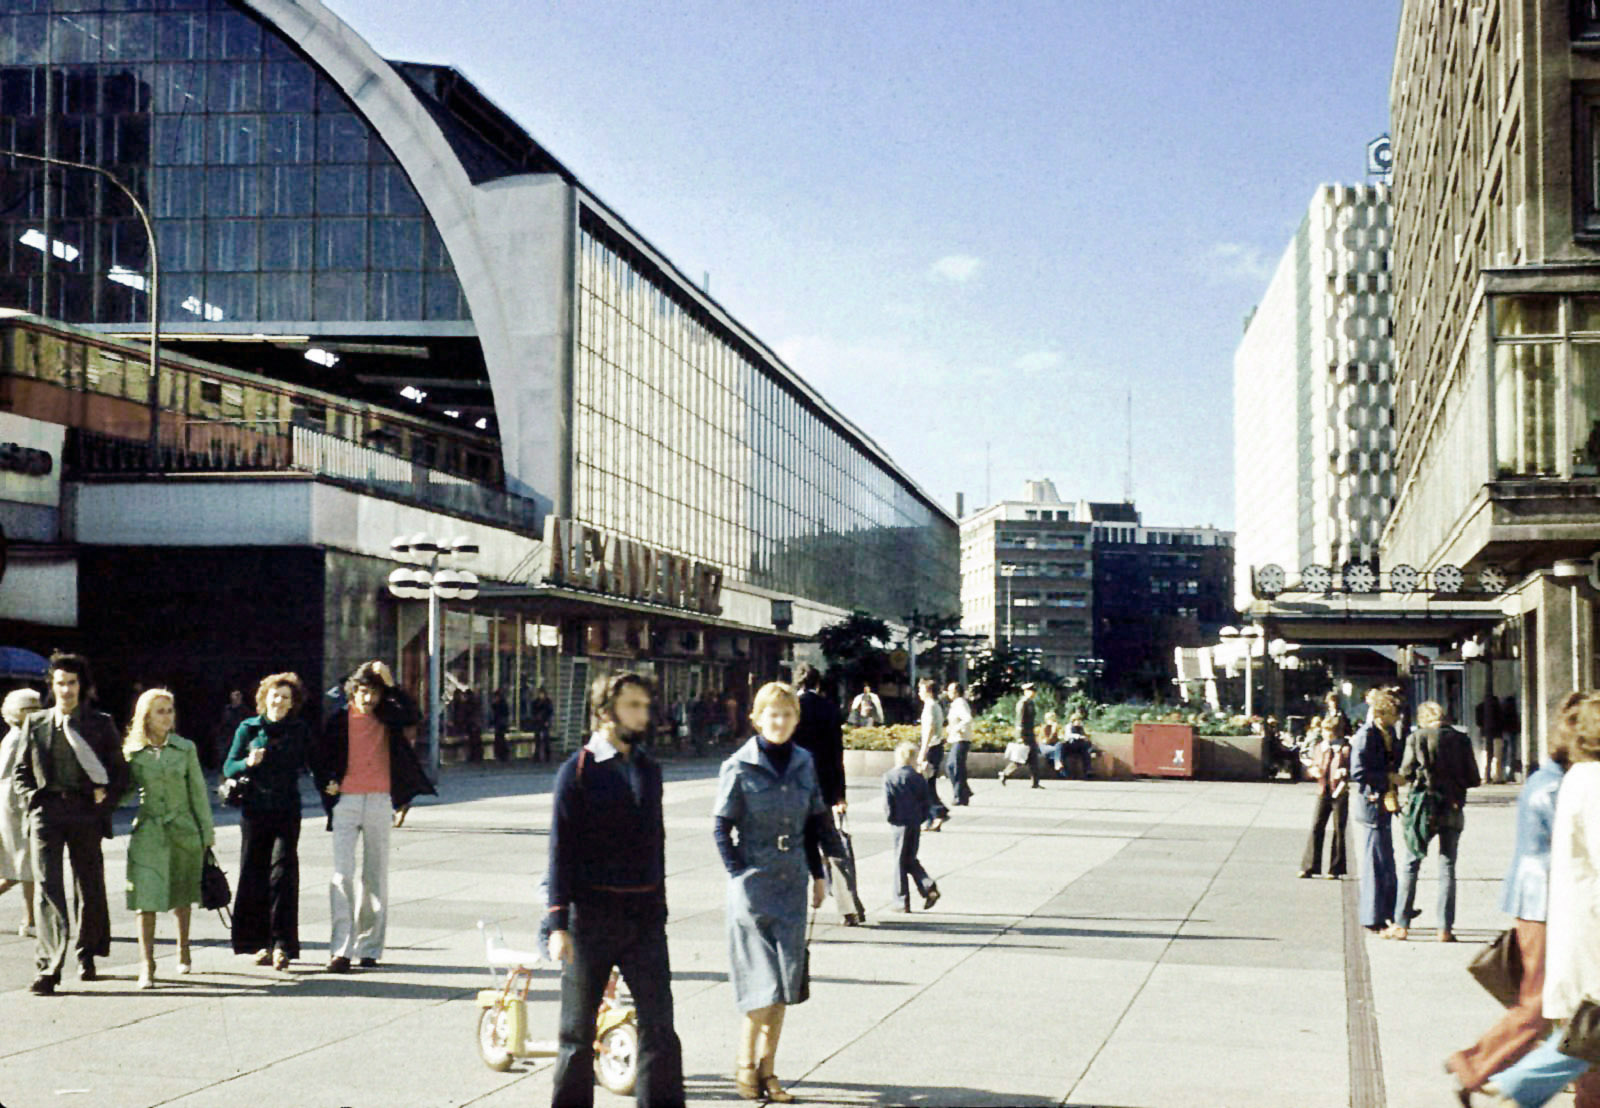 File:Alexanderplatz Berlin East Germany.jpg - Wikimedia Commons